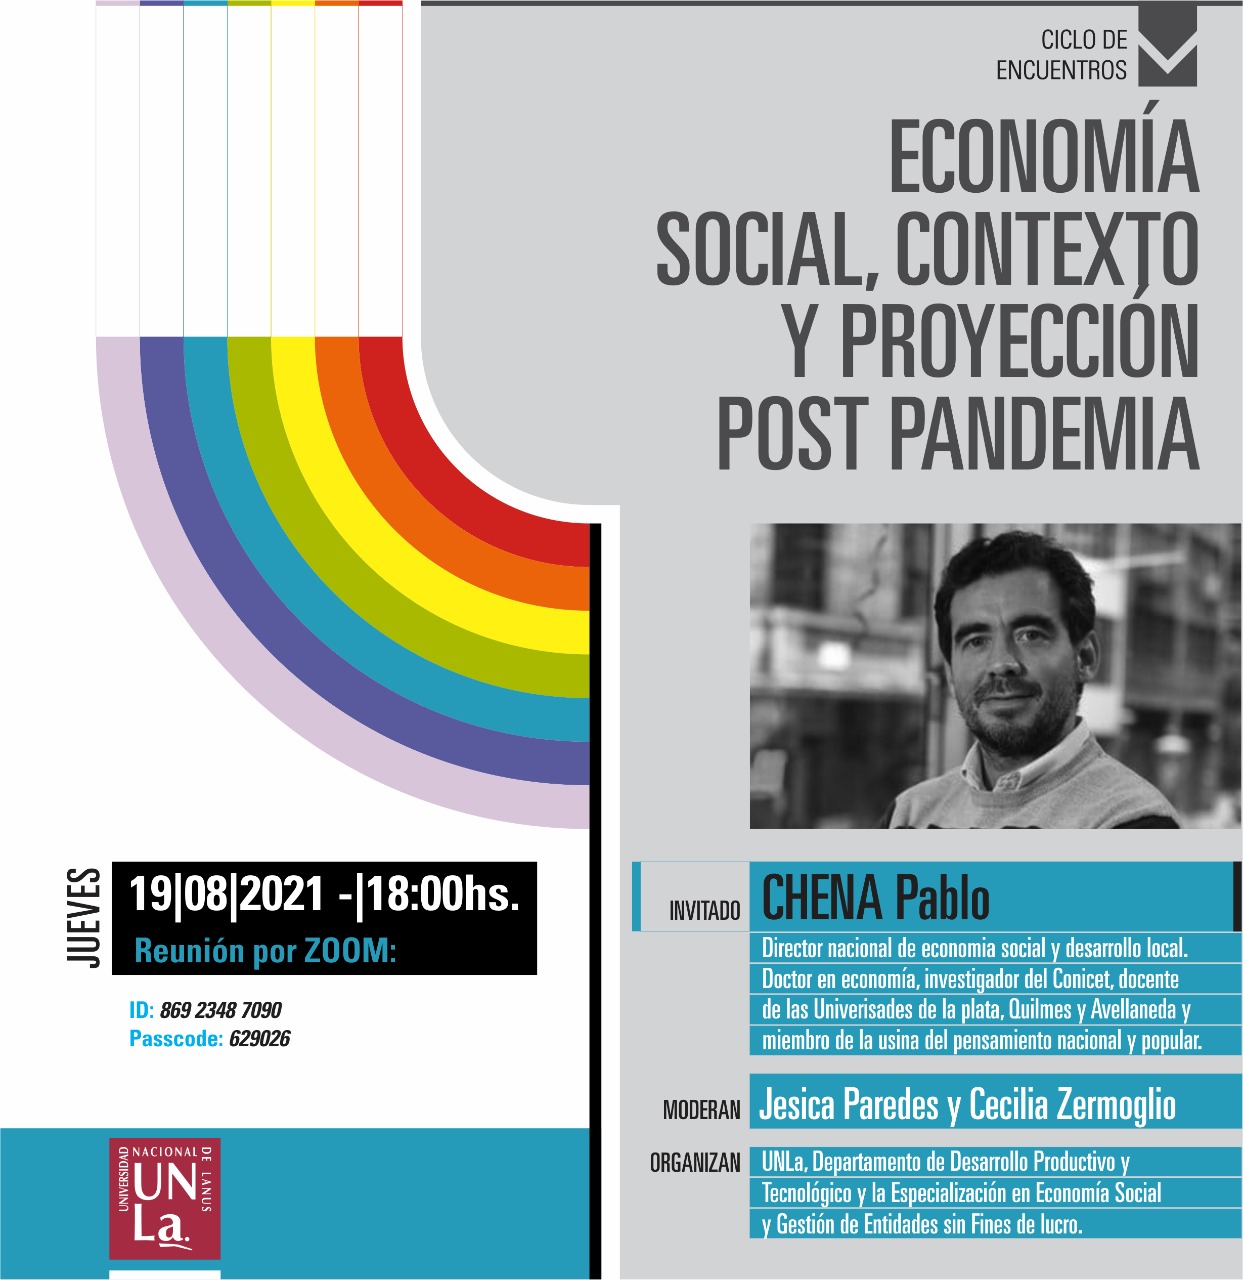 La UNLA convoca a una charla sobre Economía Social después de la pandemia